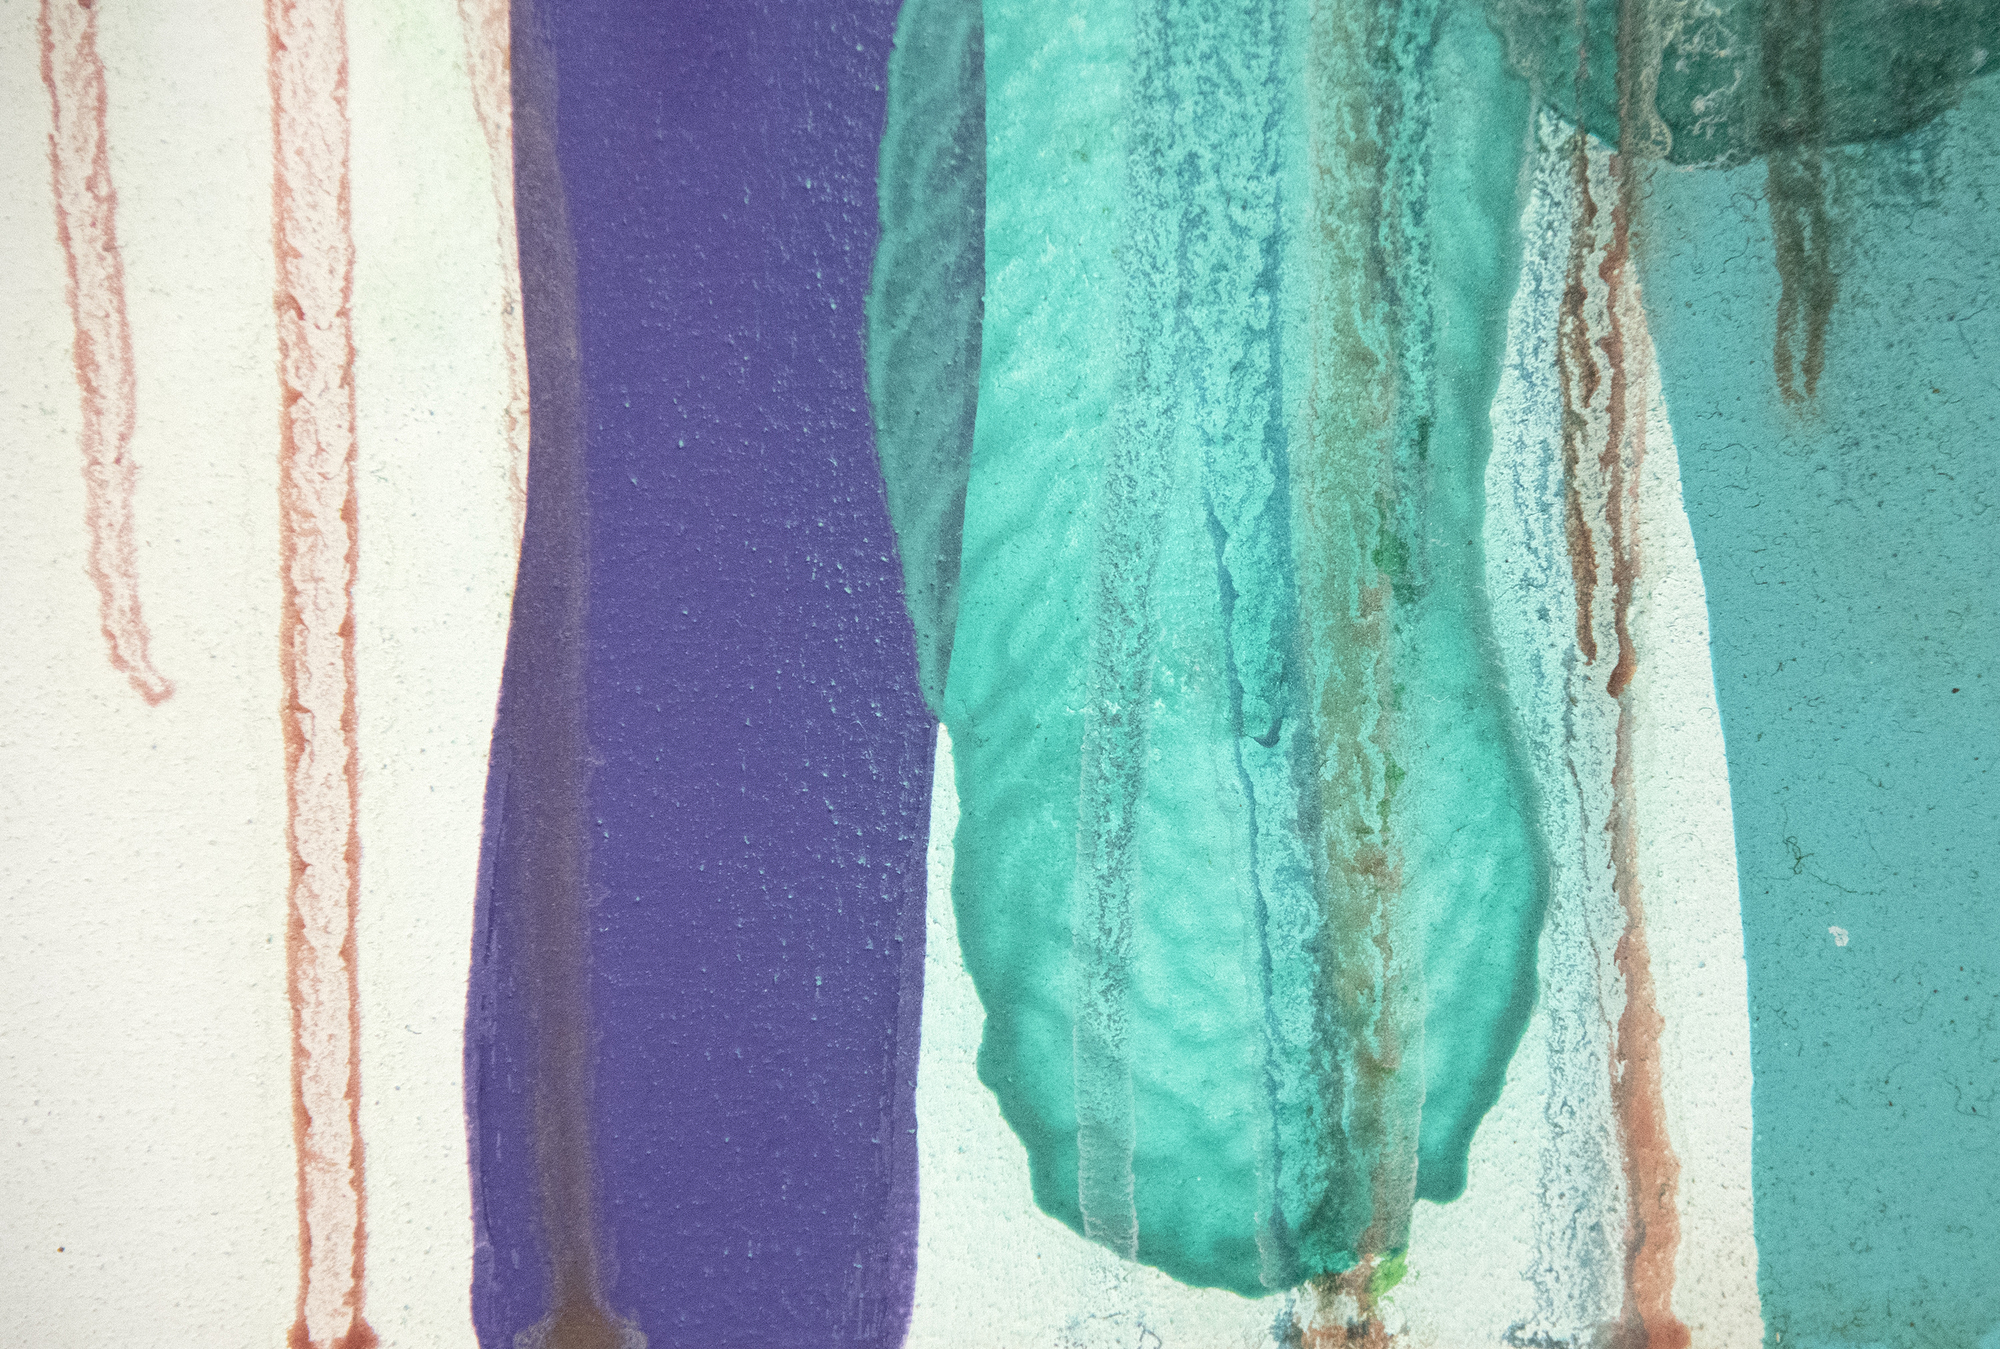 كعضو في جمعية غوتاي الأسطورية للفنون التي ازدهرت بين عامي 1954 و 1972، ظهرت سادامسا موتوناغا عندما كانت الوجودية السريالية في مرحلة ما بعد الذرية في طليعة التطور الفني في اليابان. ومع ذلك اختار مسارا مختلفا. أدار ظهره للدمار الذي سببته الحرب وخلق عملا جديدا ومبتهجا ومرحا. "بدون عنوان" من عام 1969 هو في أسلوبه الكلاسيكي، والتي وضعت بالتزامن مع موريس لويس 'ما يسمى لوحات 'الحجاب'. إنه عرض ناجح ببراعة لطليعة موتوناغا على التاراشيكومي الياباني التقليدي - التقنية التي تنطوي على إمالة القماش في زوايا مختلفة للسماح لخليط من الراتنج والمينا بالتدفق على بعضها البعض قبل أن يجف الطلاء تماما.